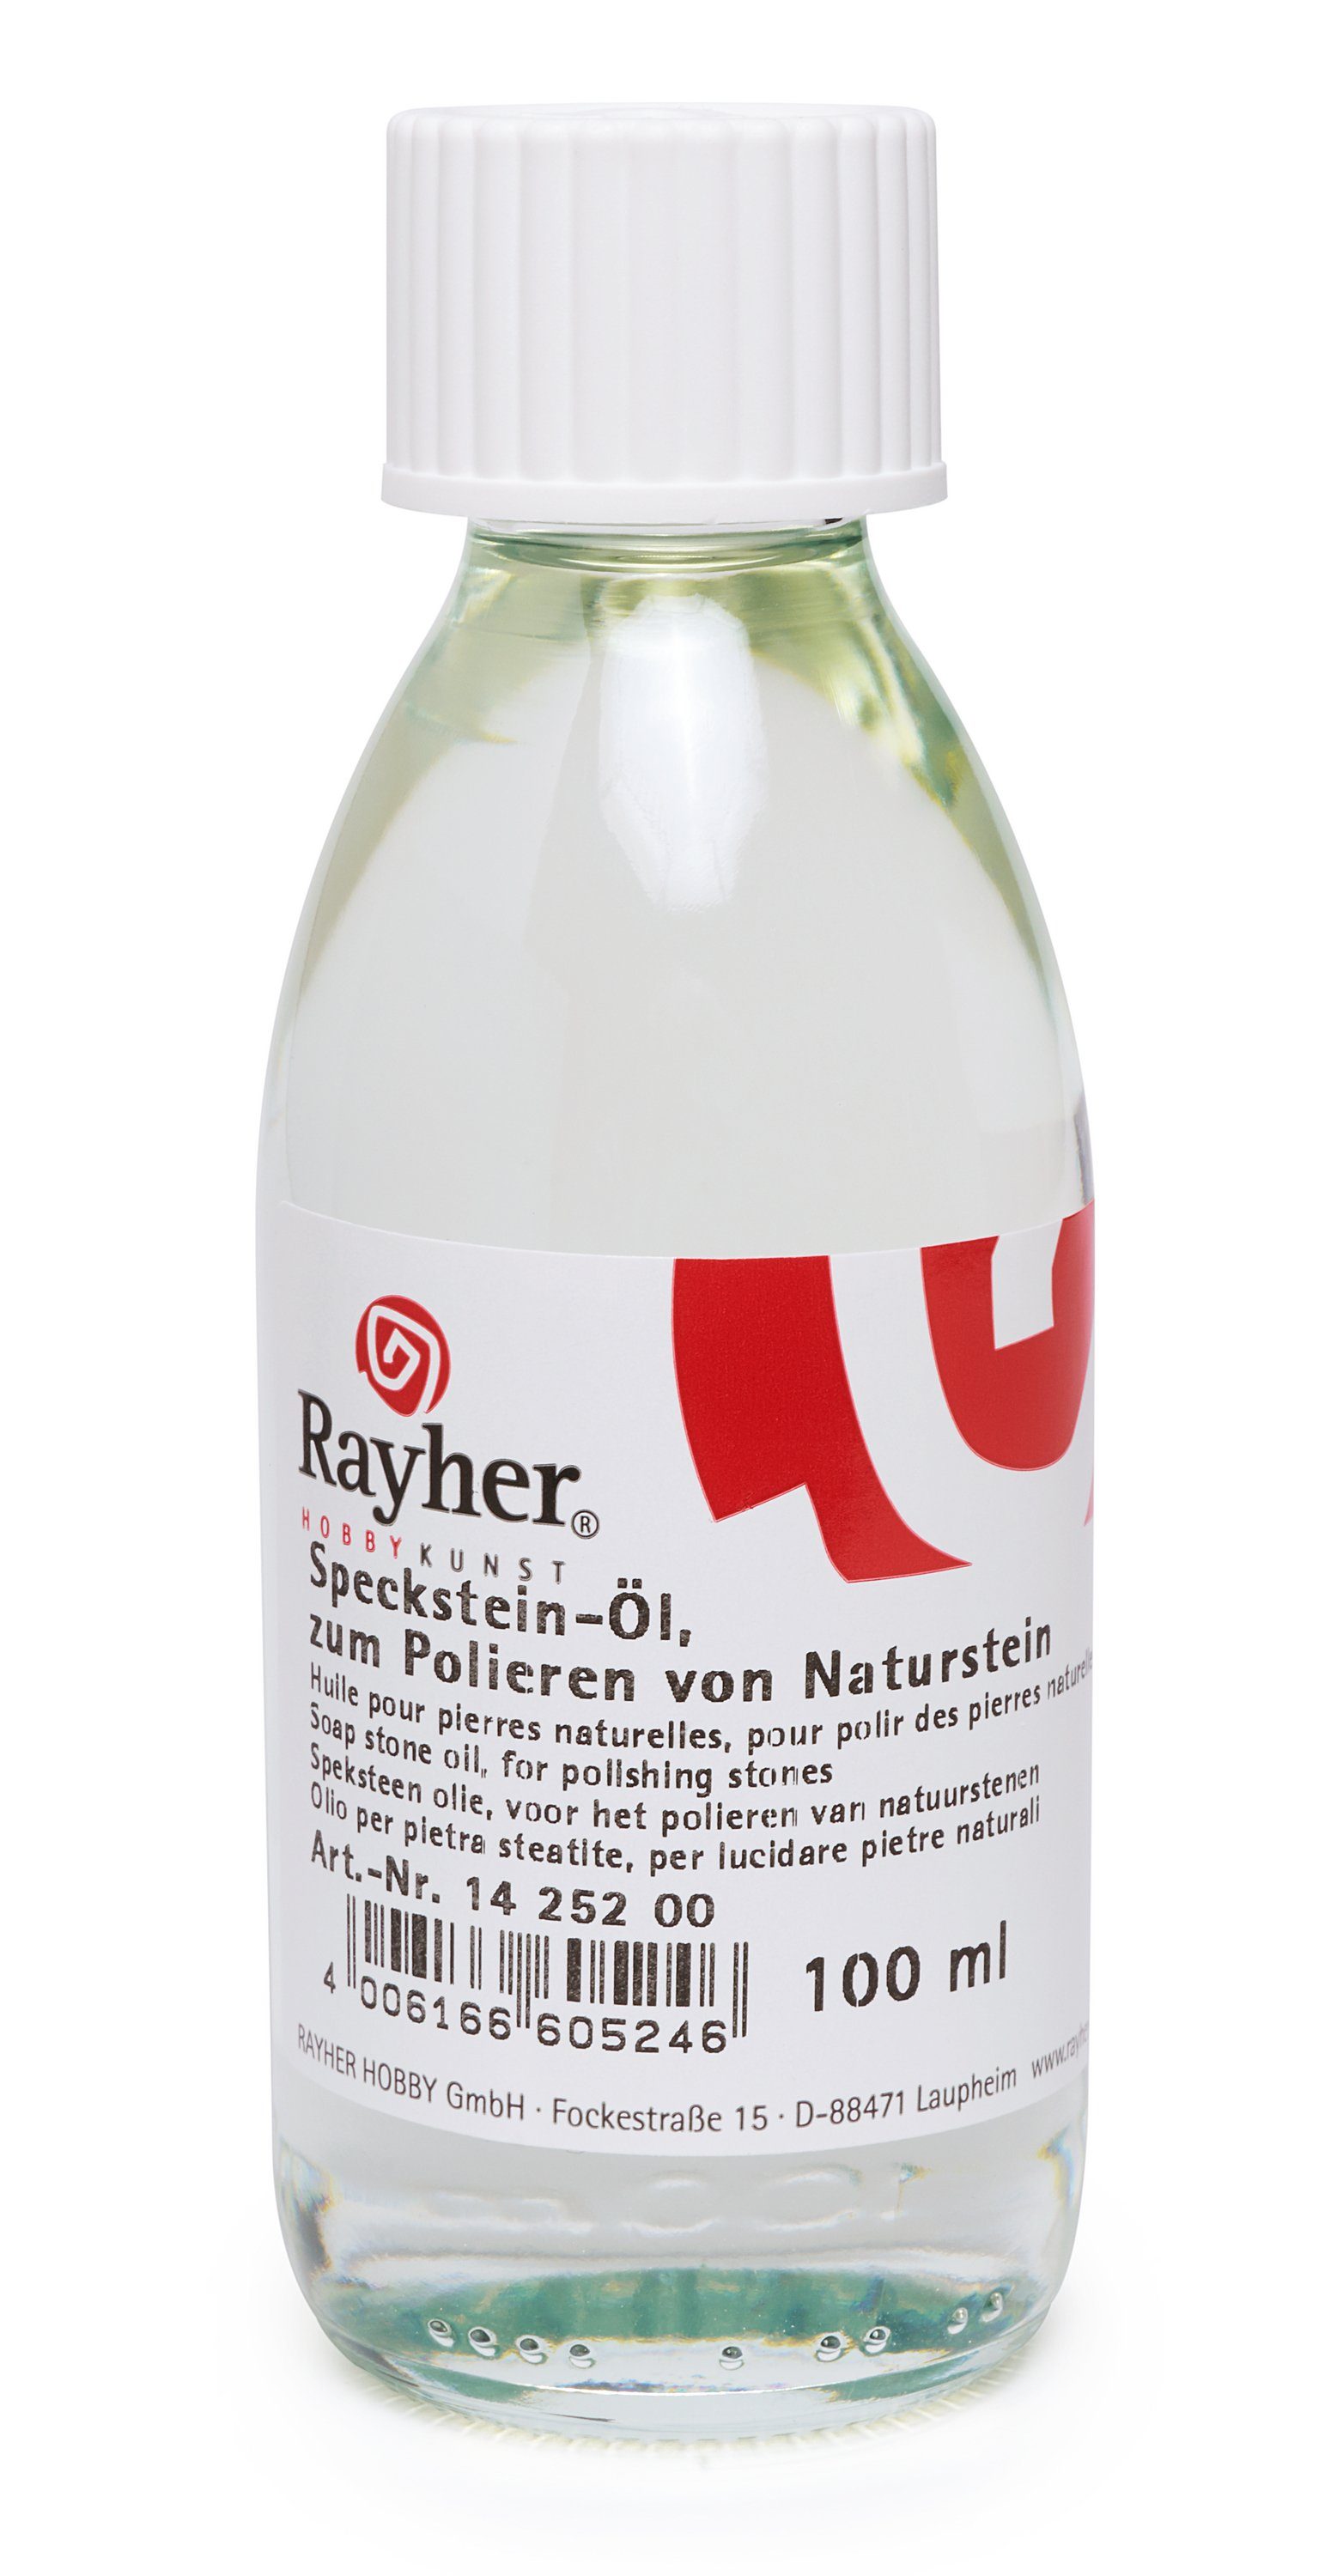 Reinigungs-Set ml Rayher 100 RAYHER Speckstein-Öl,